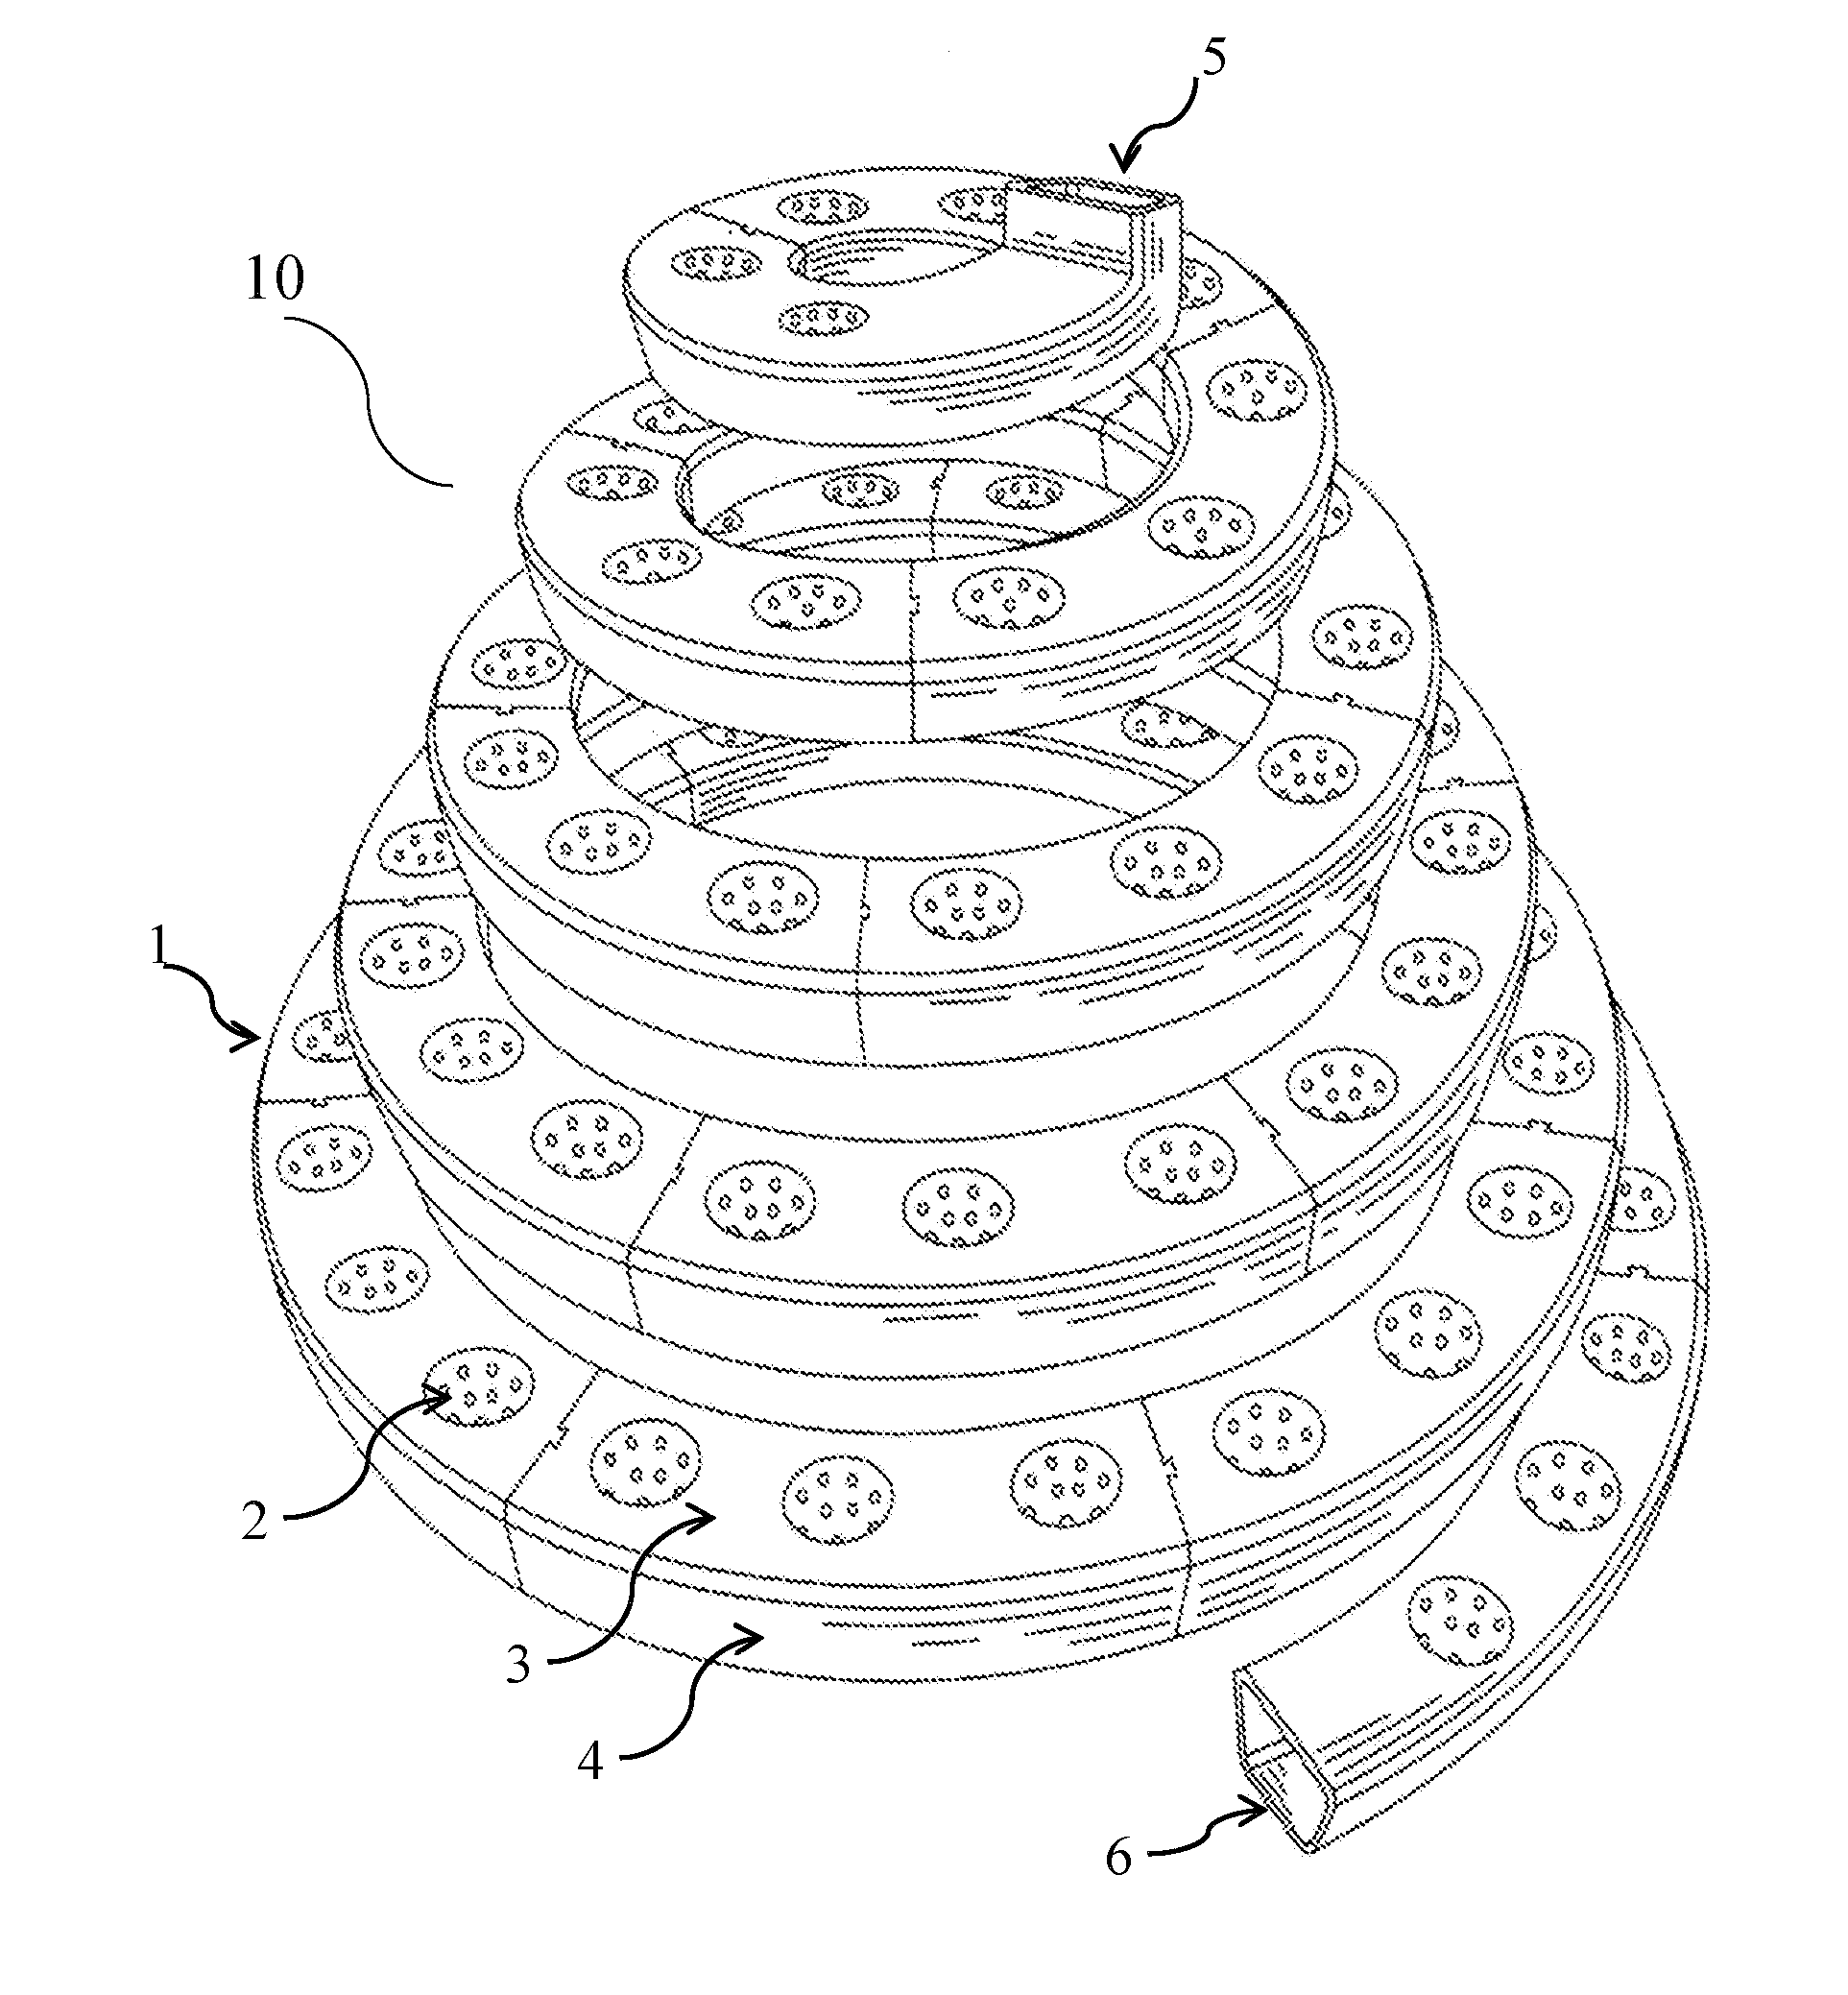 Spiral garden